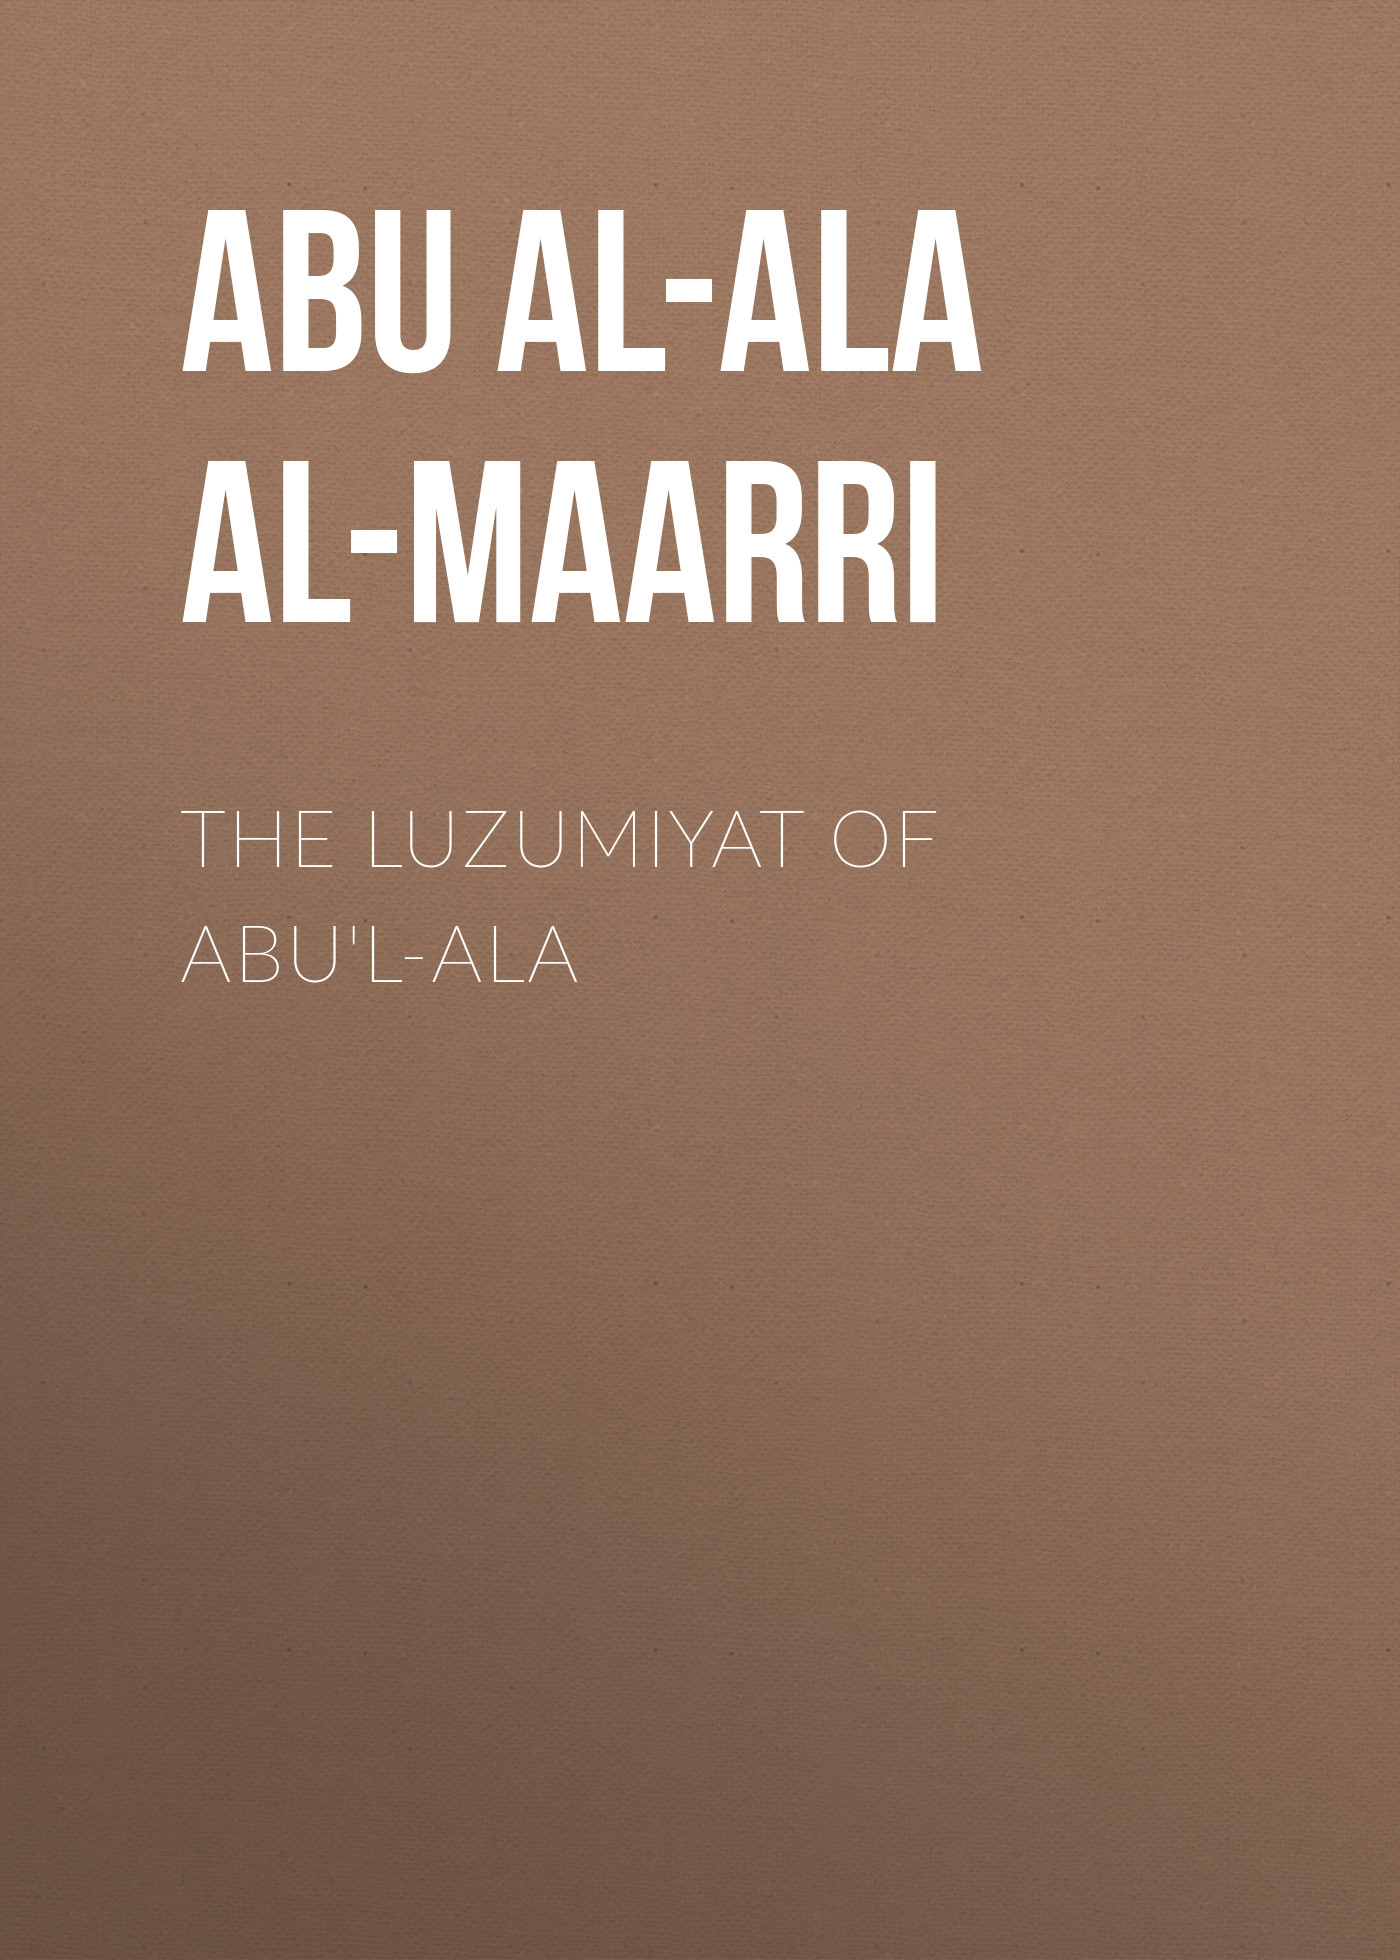 The Luzumiyat of Abu'l-Ala